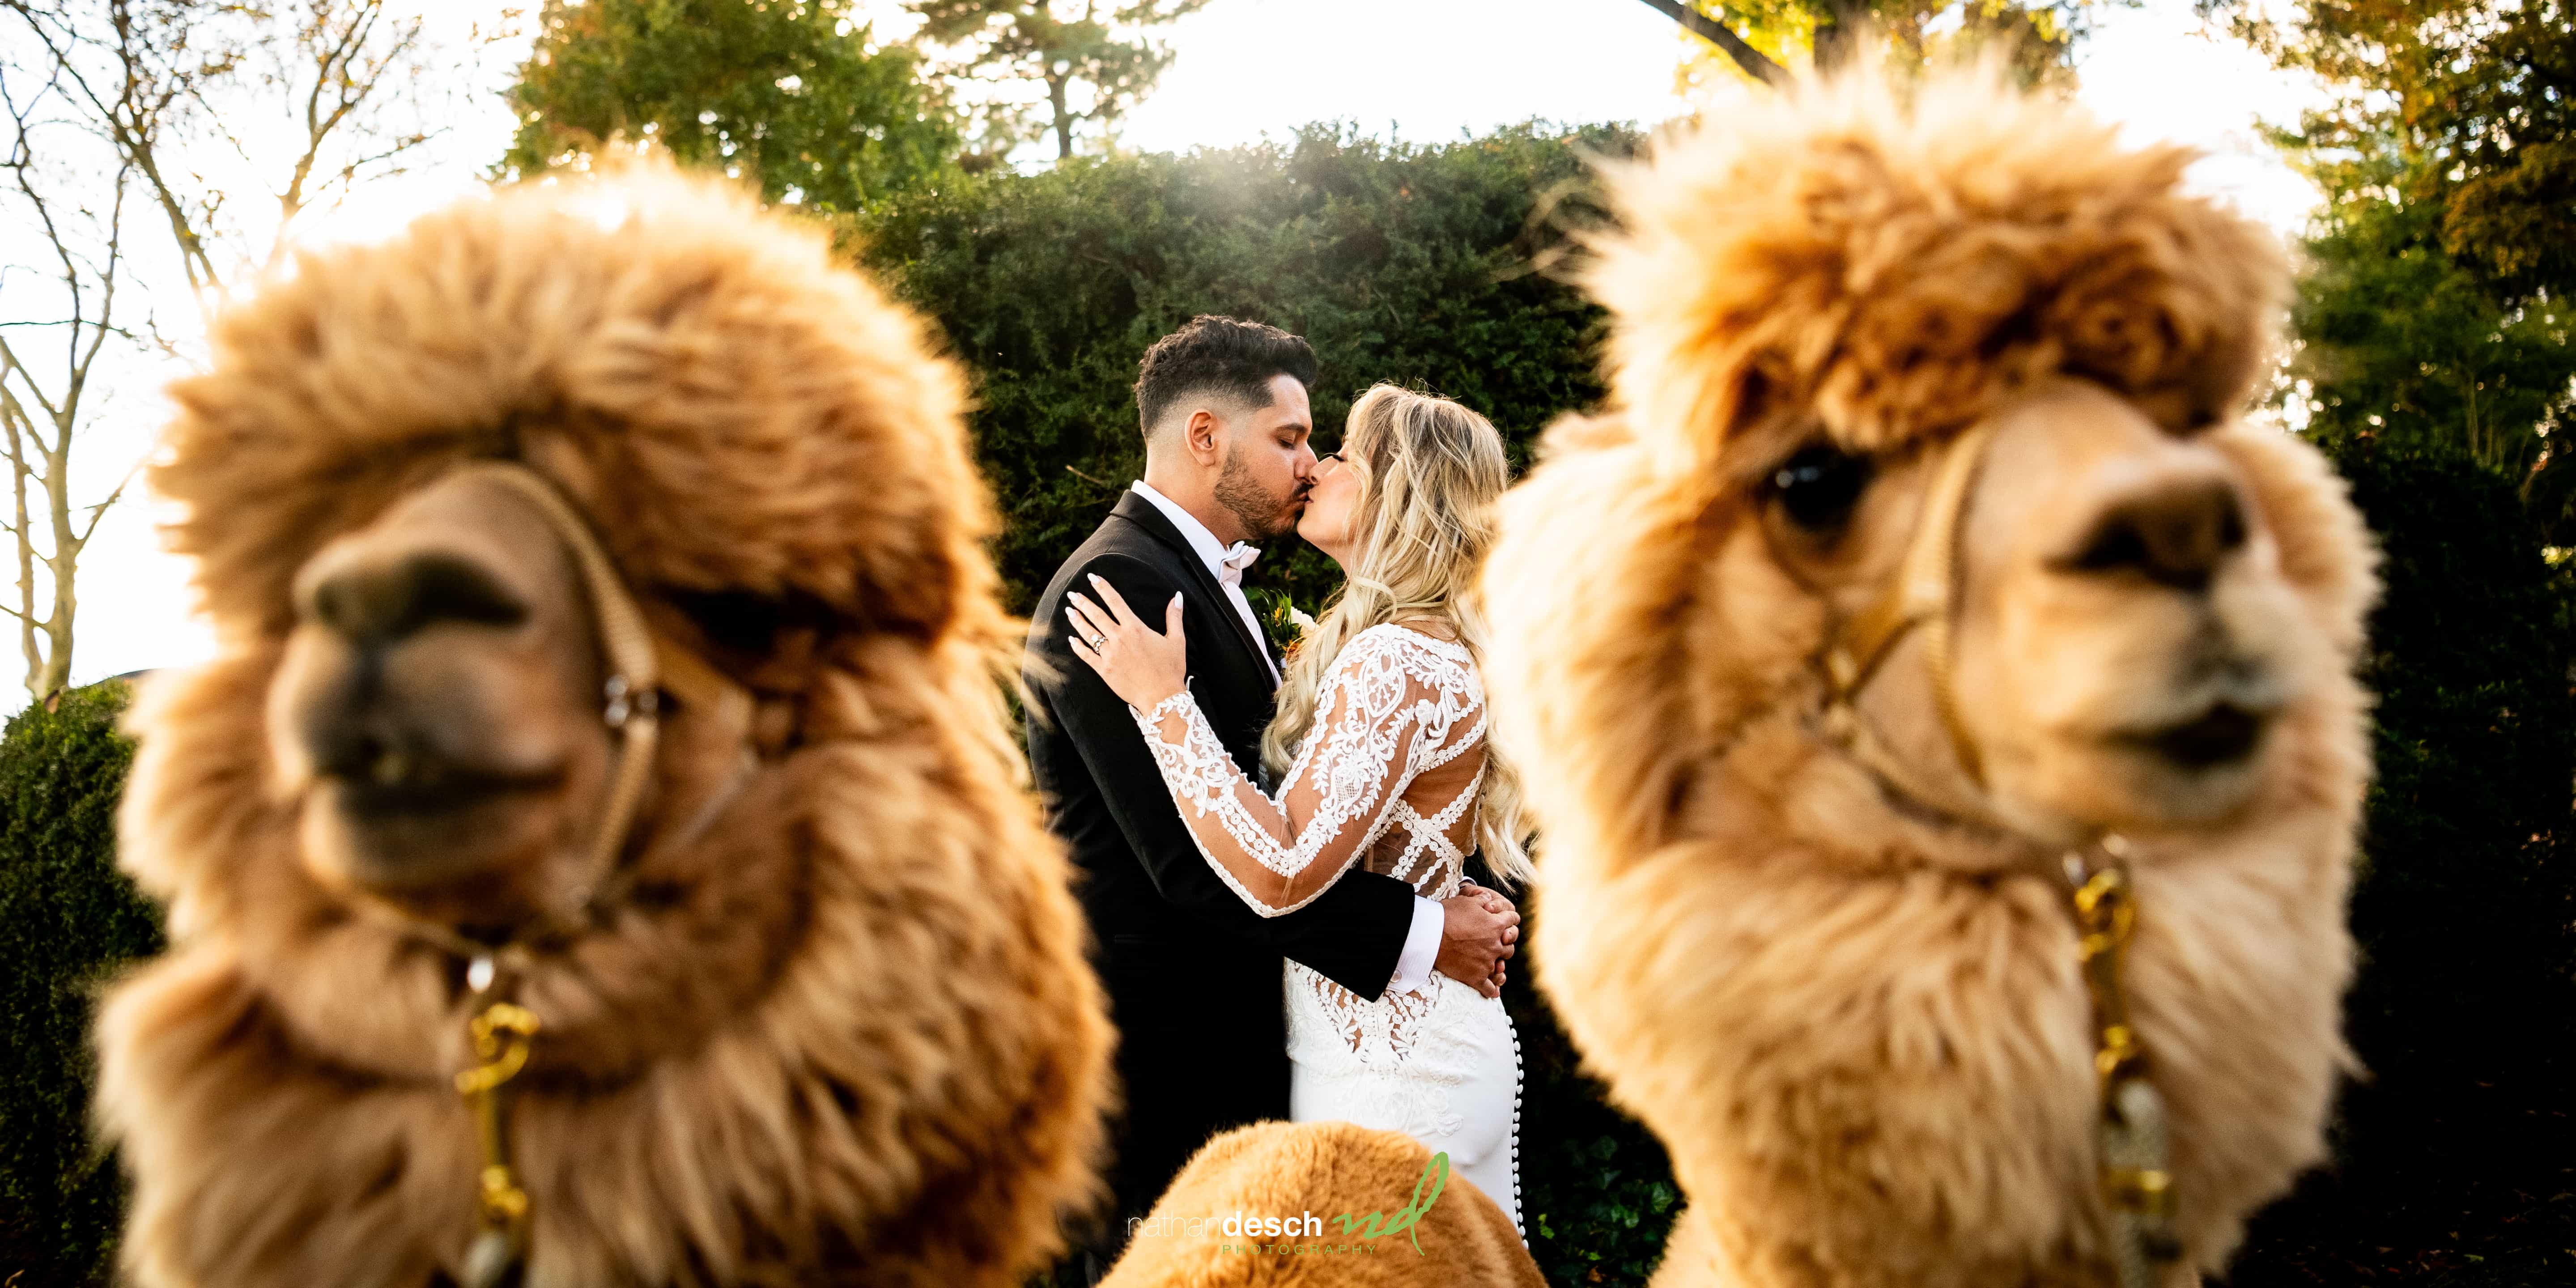 Llamas at wedding